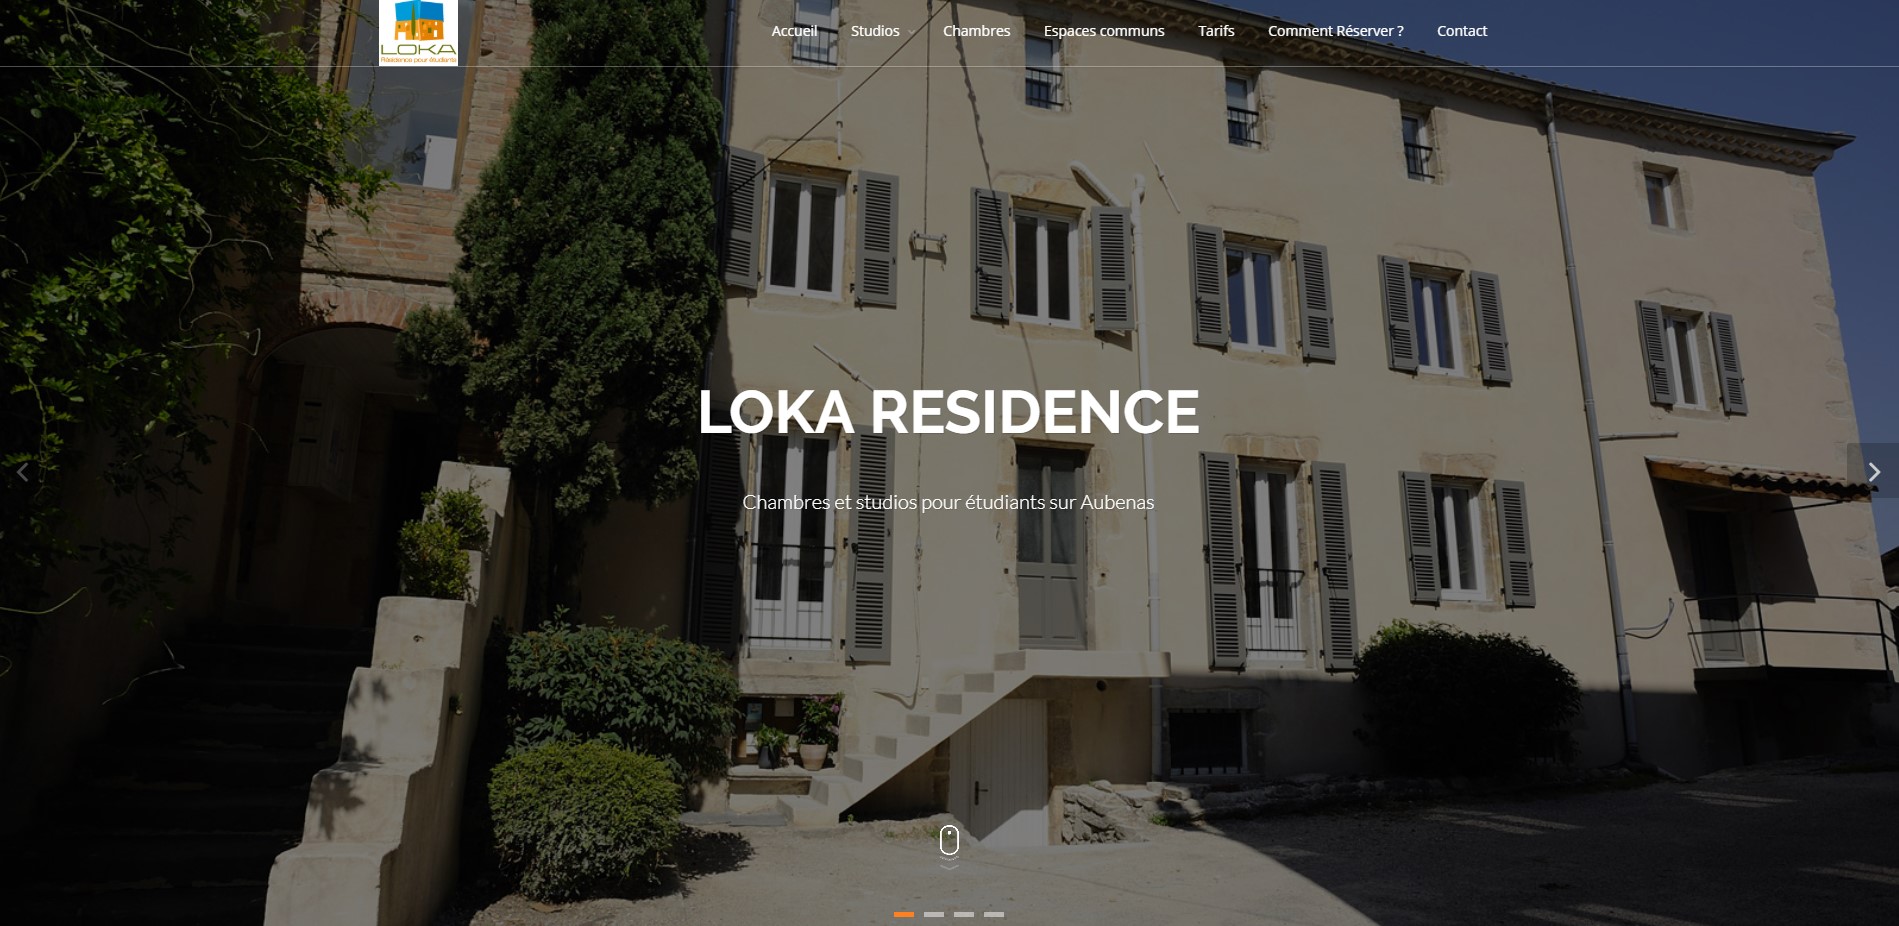 Réalisation RP2I (Romaric Pibolleau): Loka Résidence - site vitrine